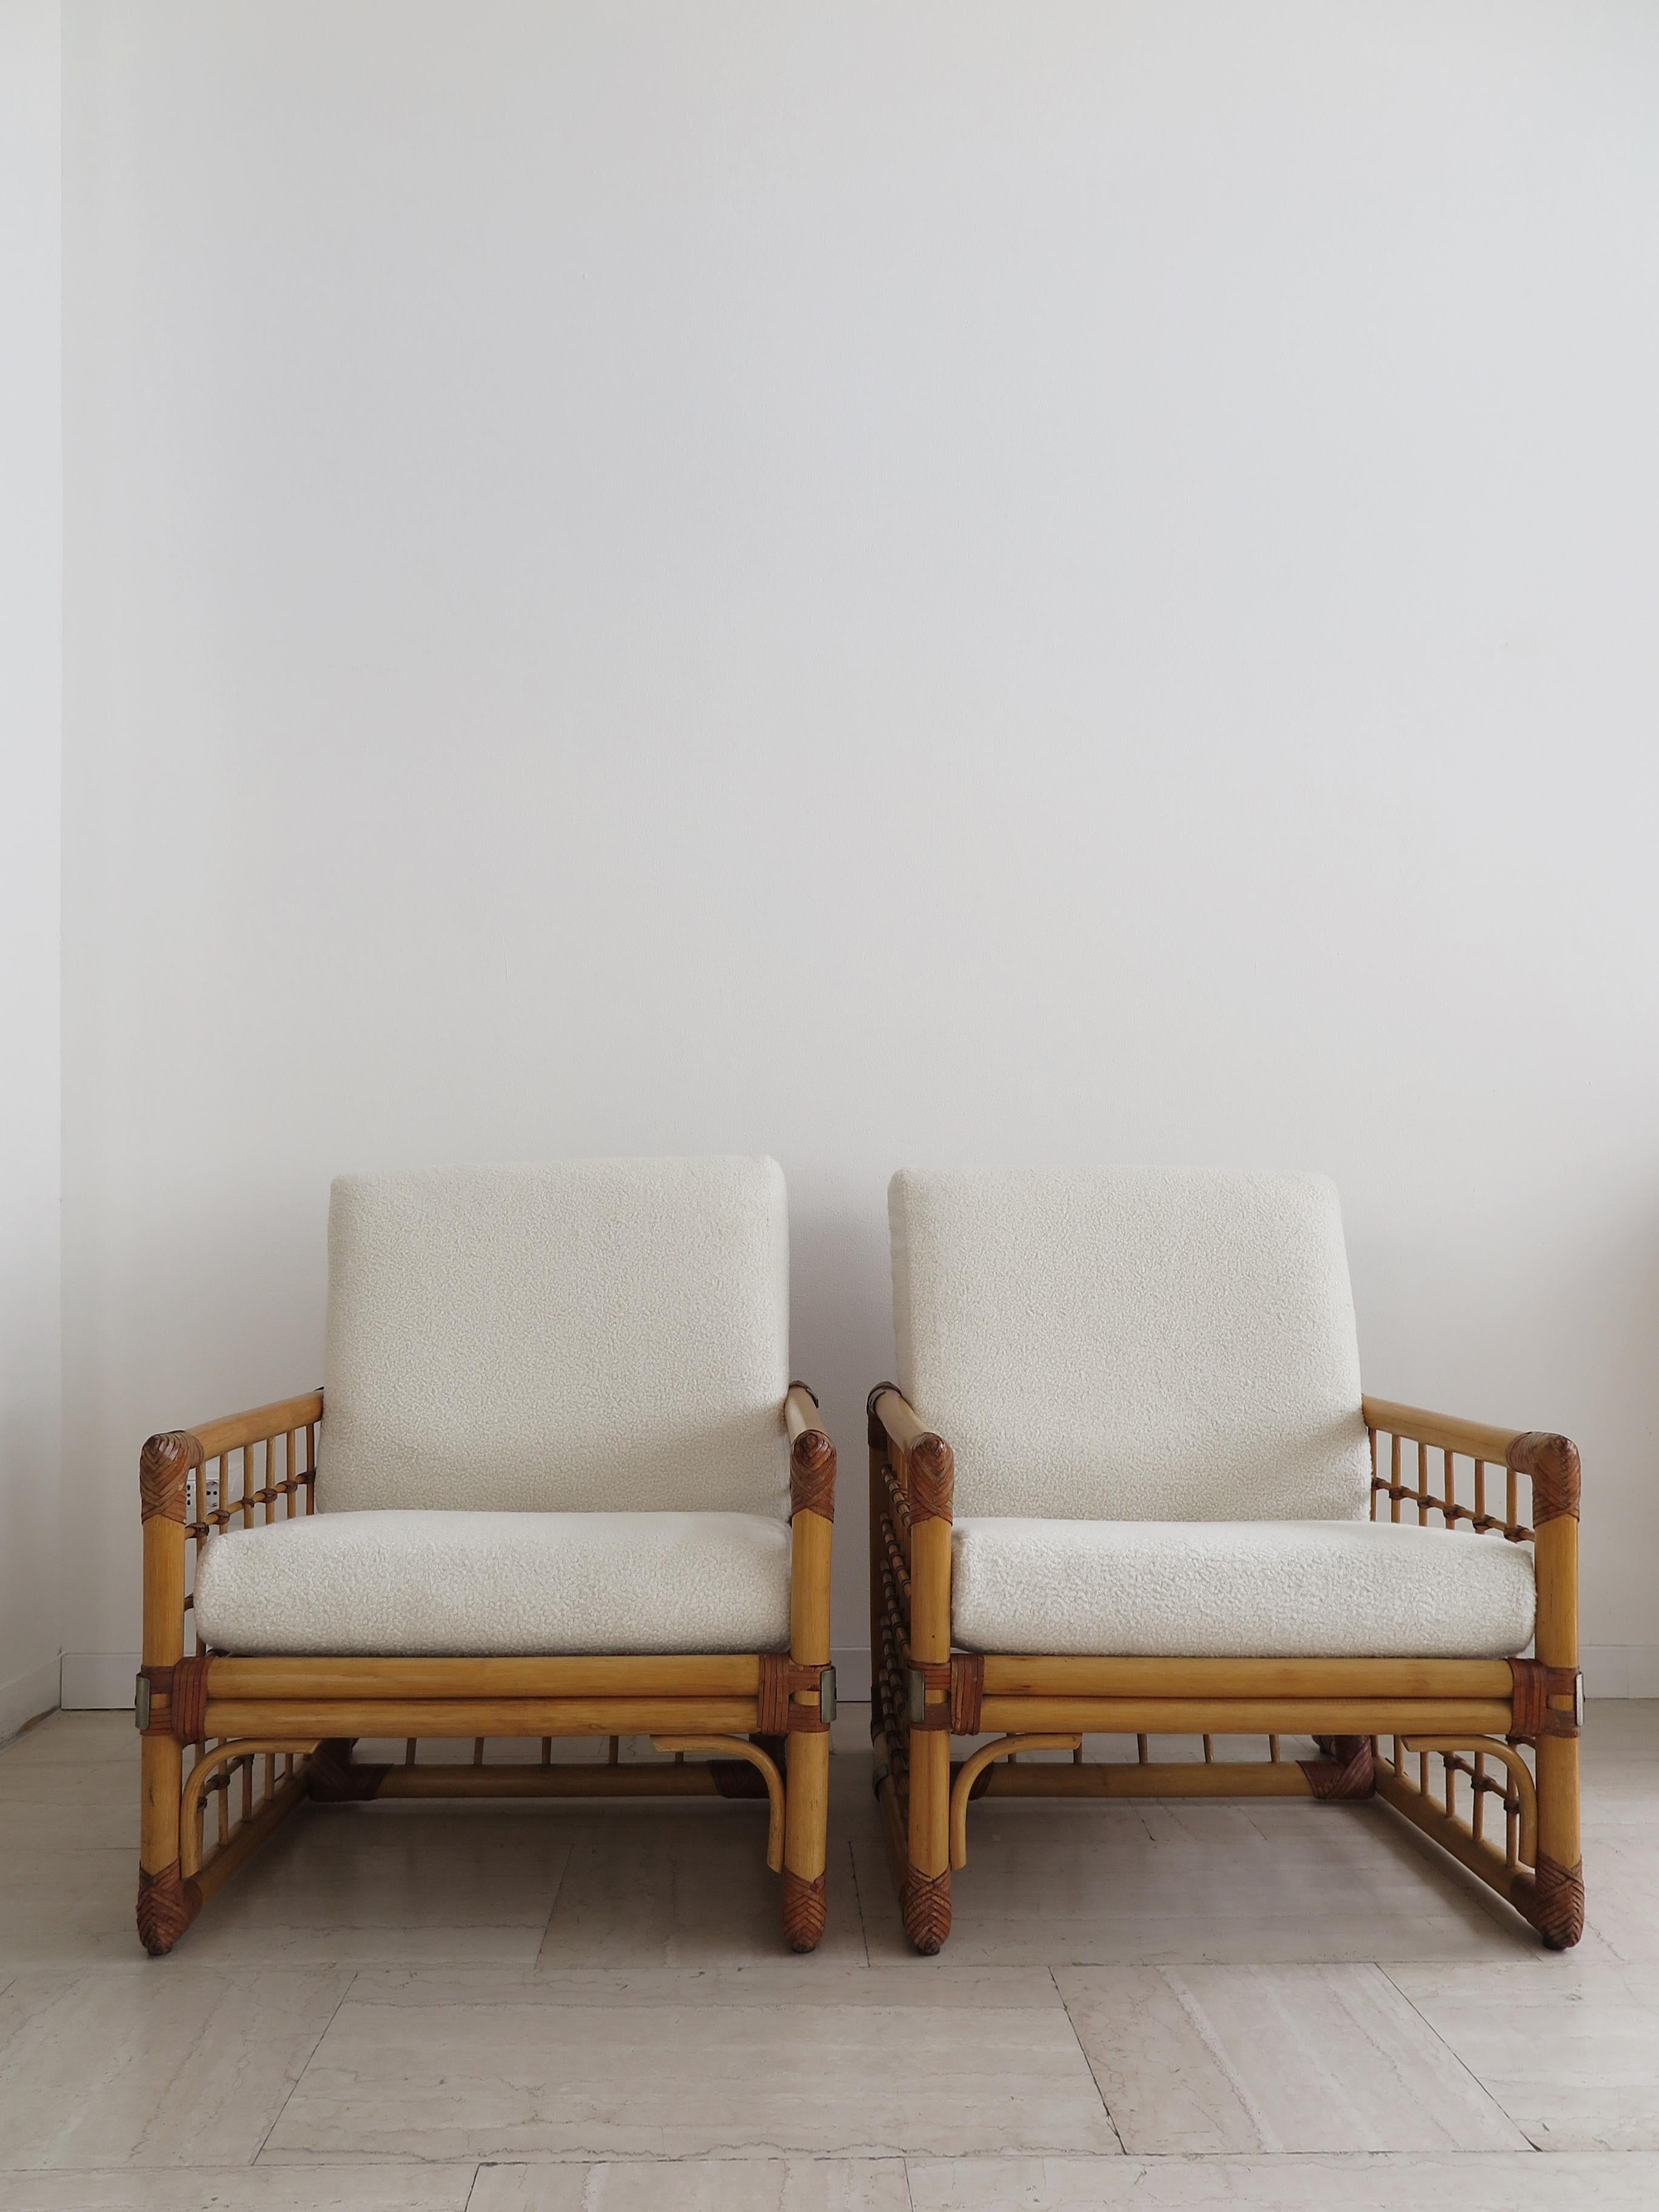 Paire de fauteuils italiens midcentury modern design avec structure en bambou, canne d'Inde, détails en cuir et métal avec coussins en tissu bouclè, Italie production années 1970.

Les coussins sont attachés au dossier par un ruban et reposent à la